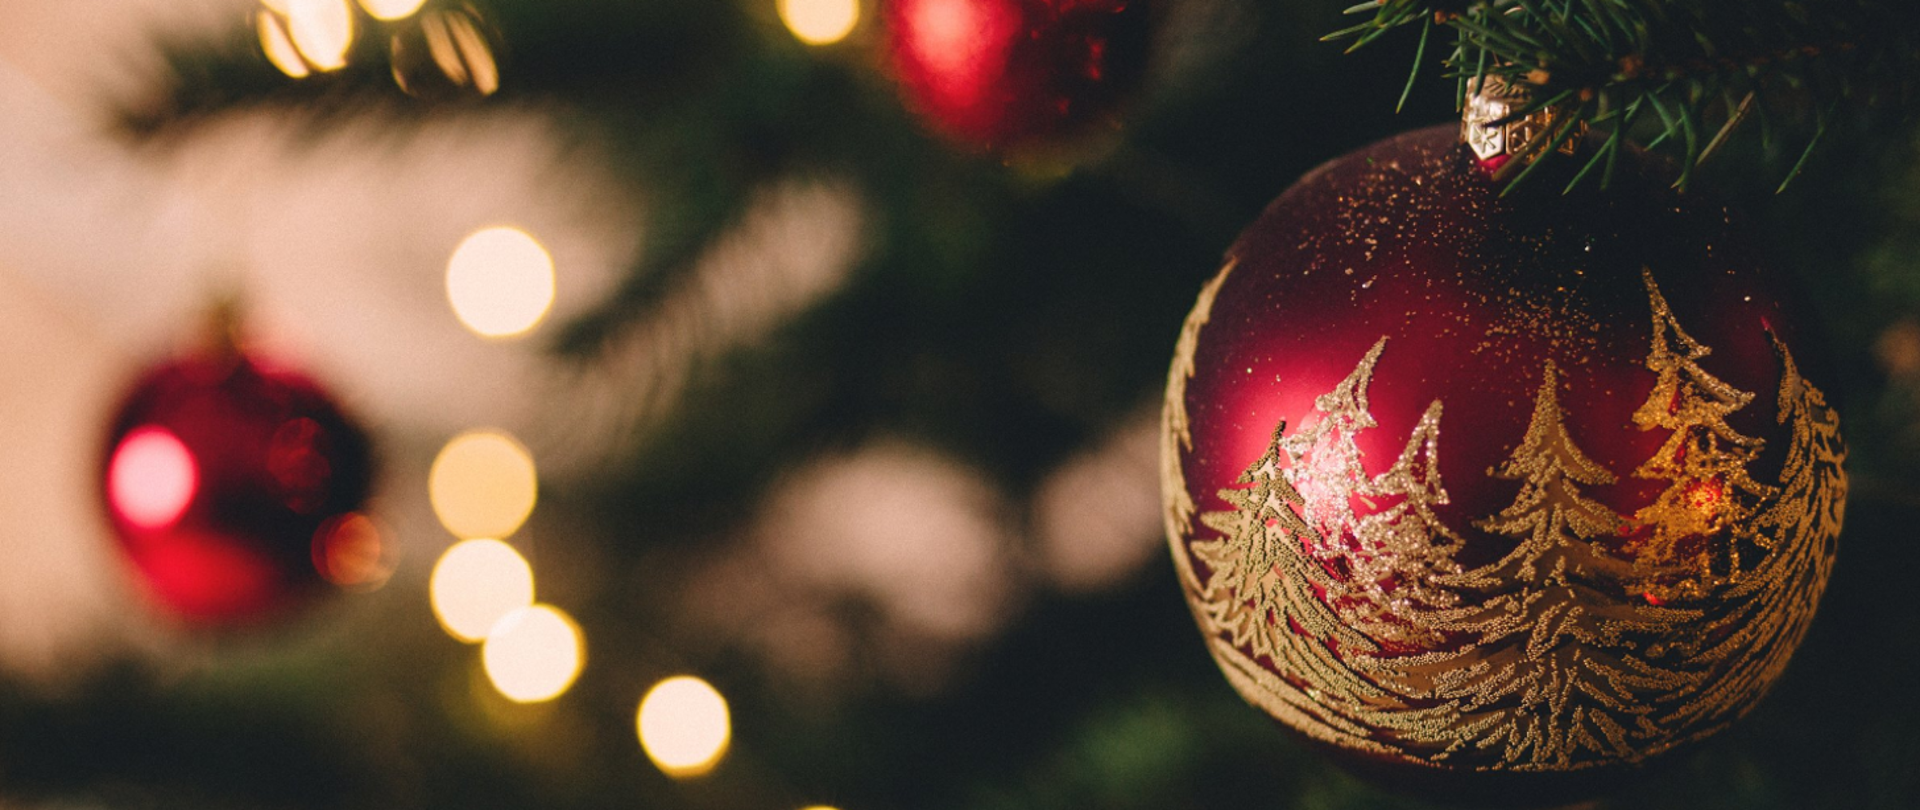 Ilustracja przedstawia czerwoną bombkę ze złotymi choinkami wiszącą na świątecznym drzewku.